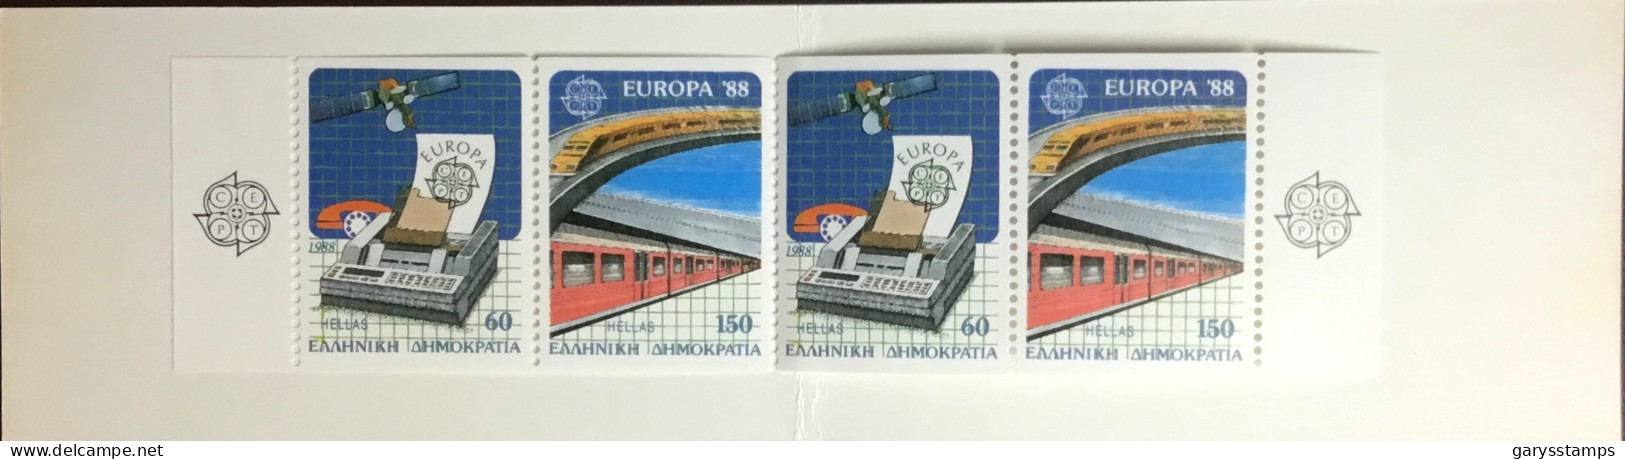 Greece 1988 Europa Booklet Unused - Cuadernillos